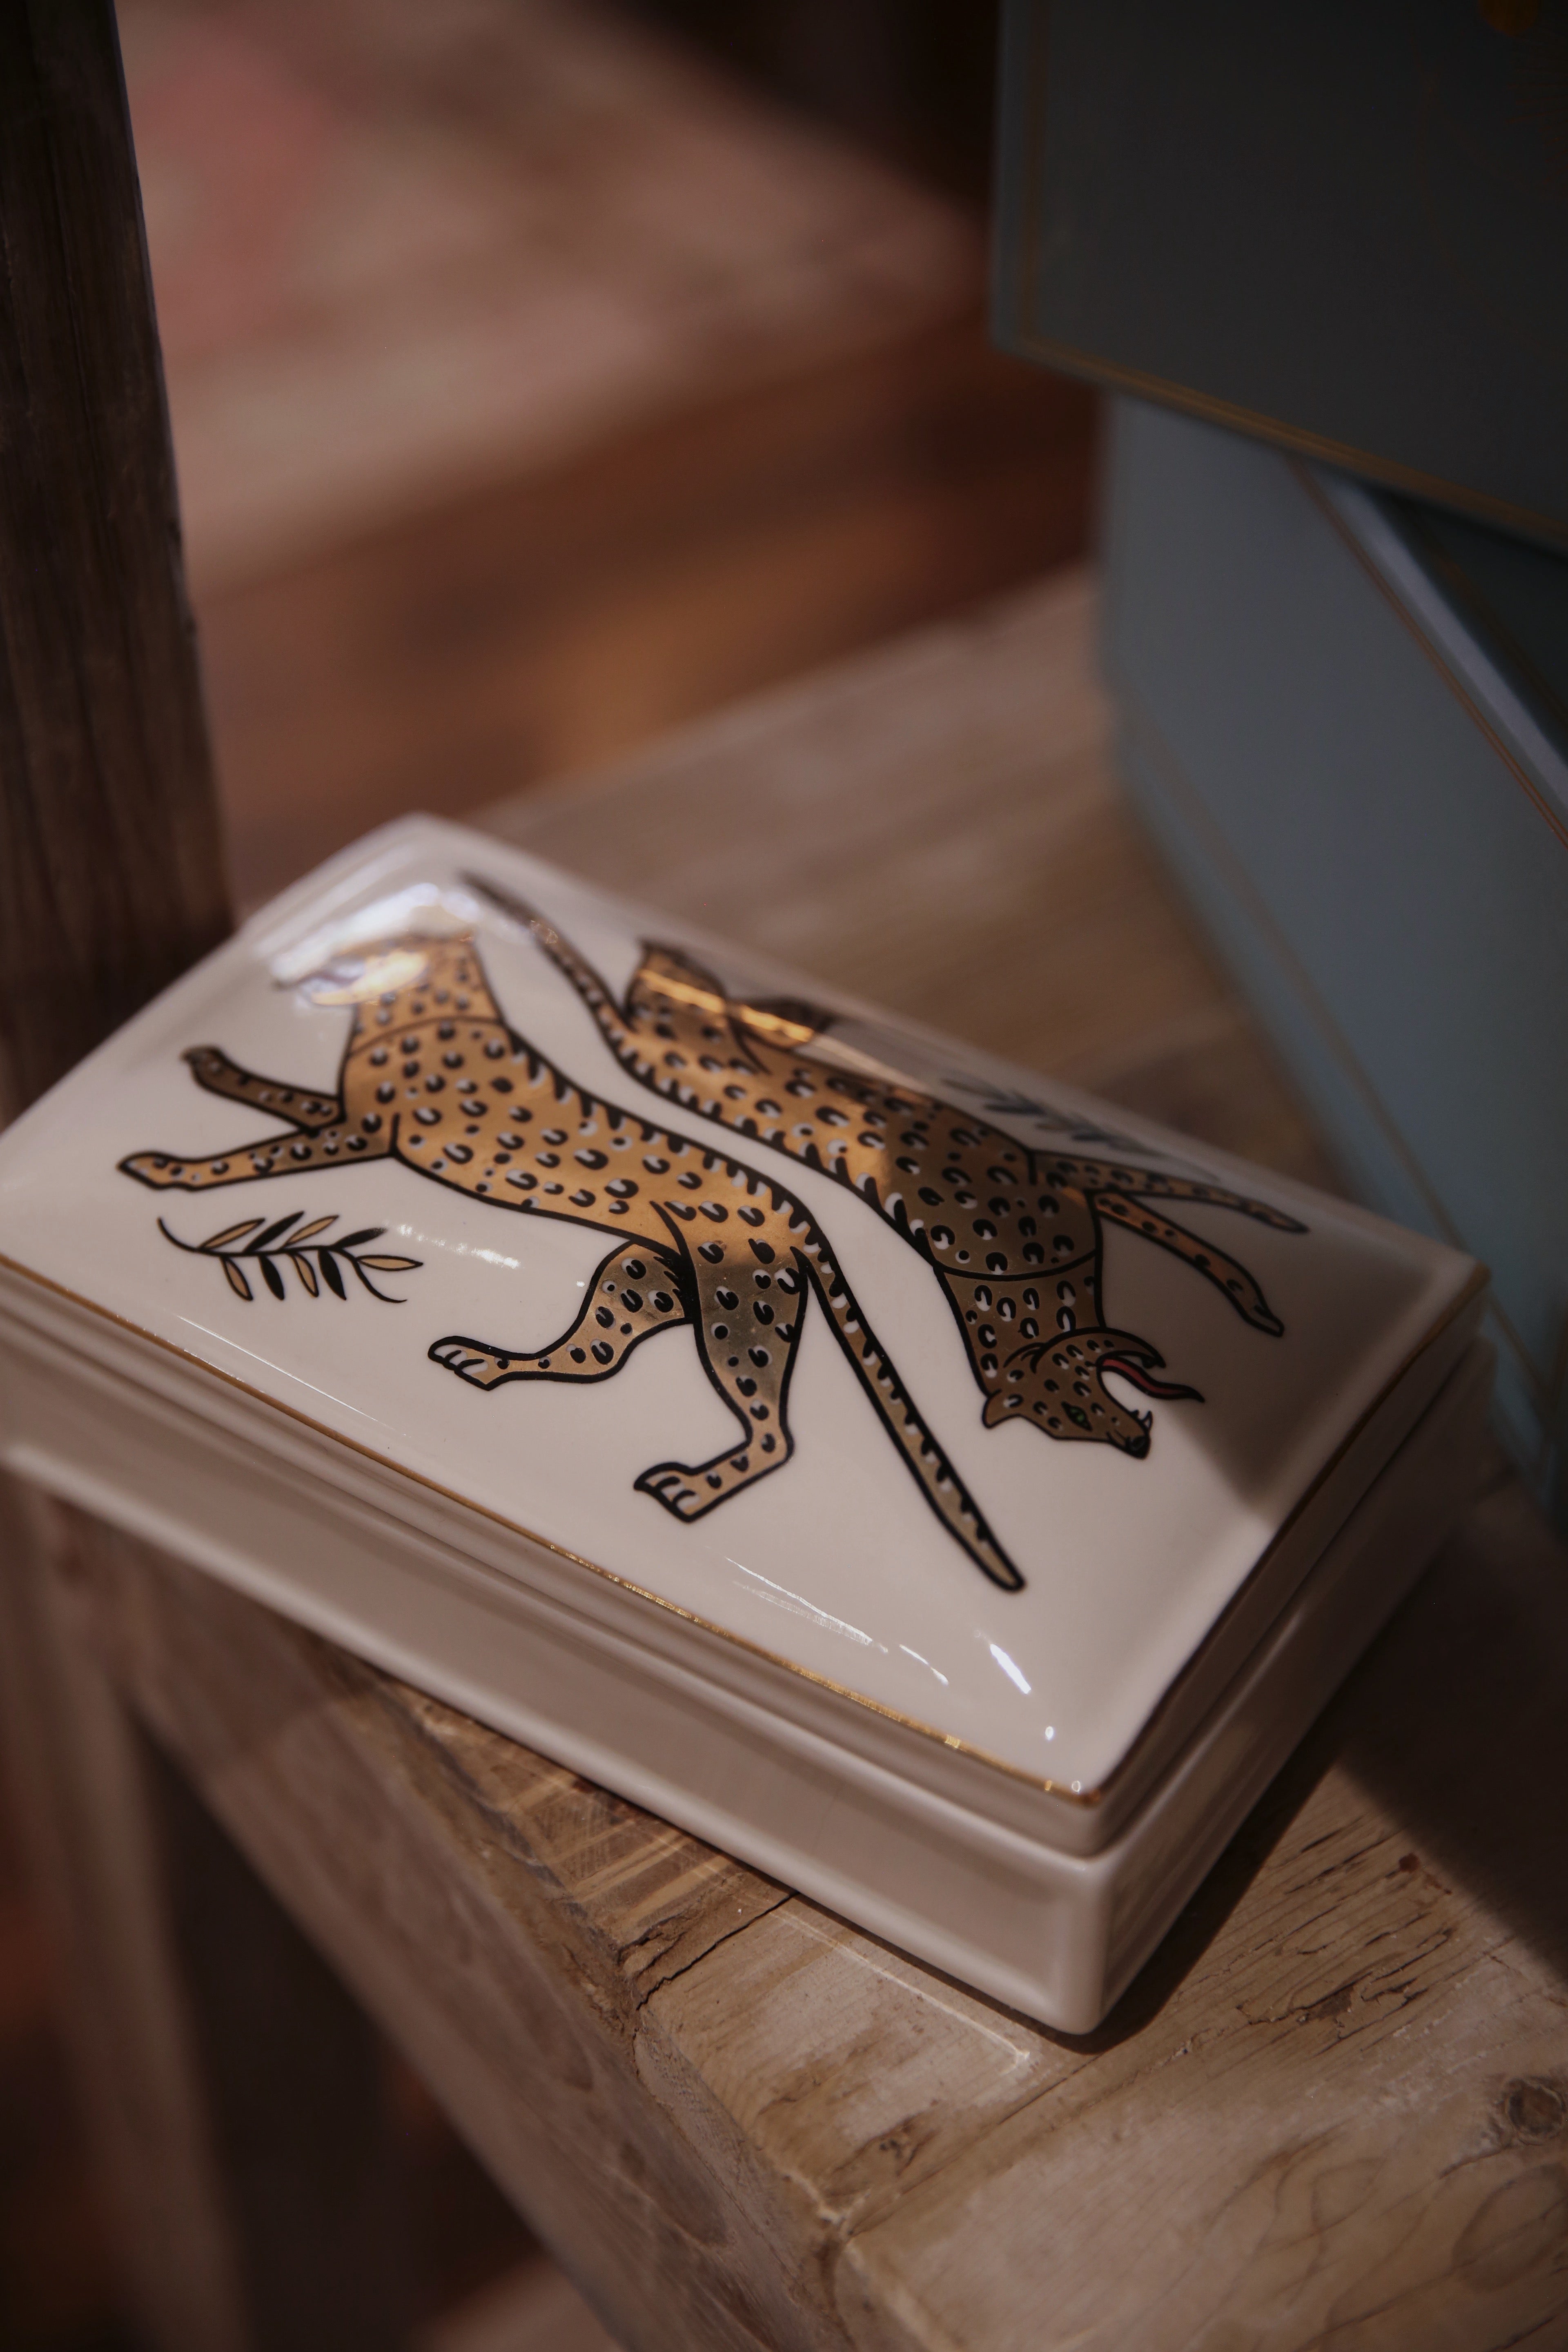 Duo Leopard Ceramic Box